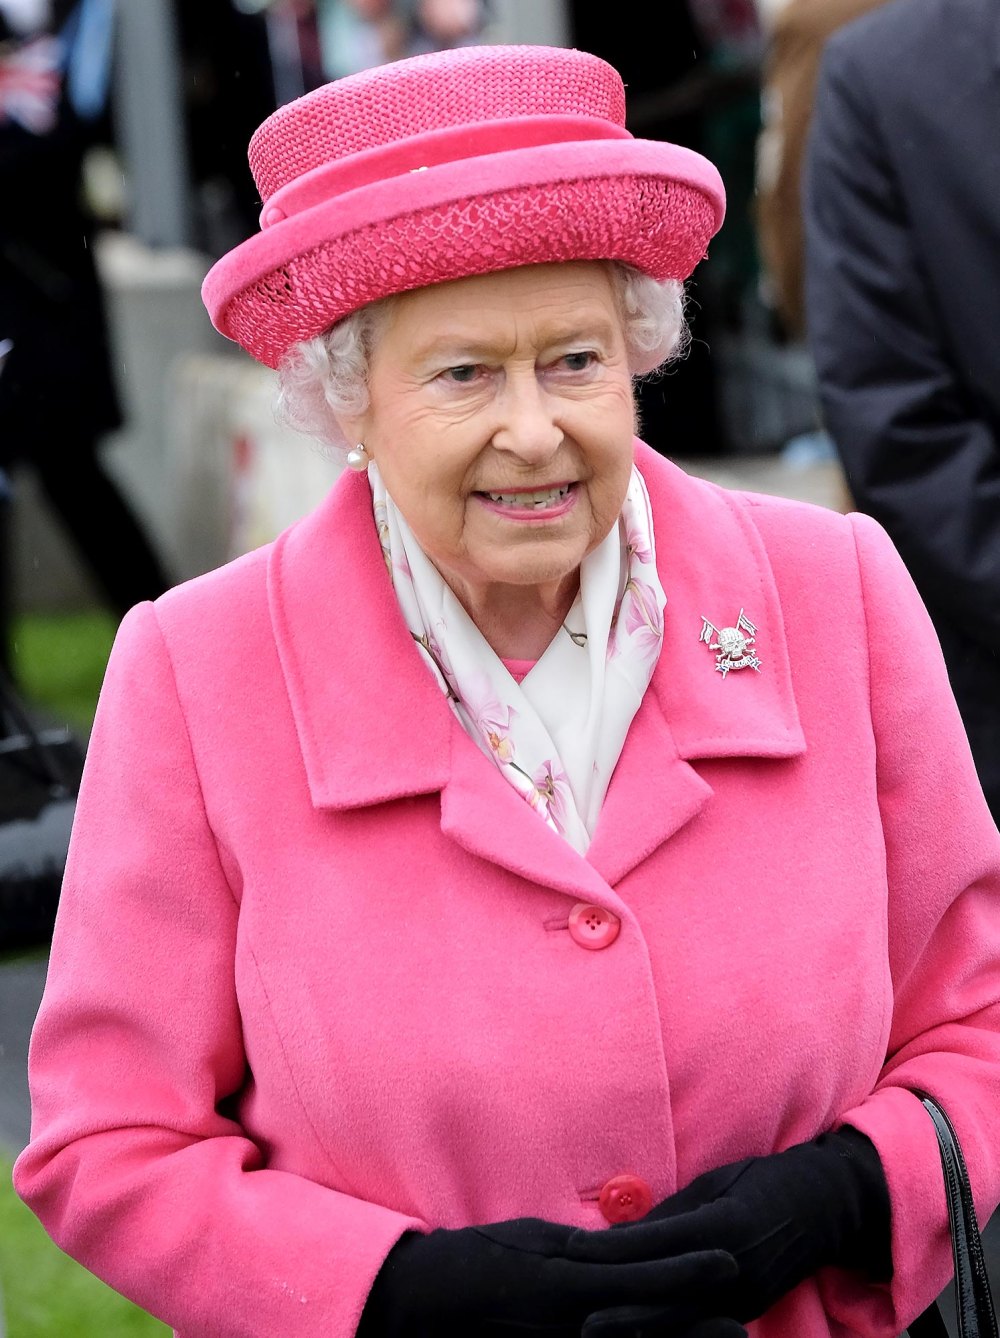 Königin Camilla würdigt Königin Elizabeth, indem sie ihre Brosche mit Totenkopf und gekreuzten Knochen trägt